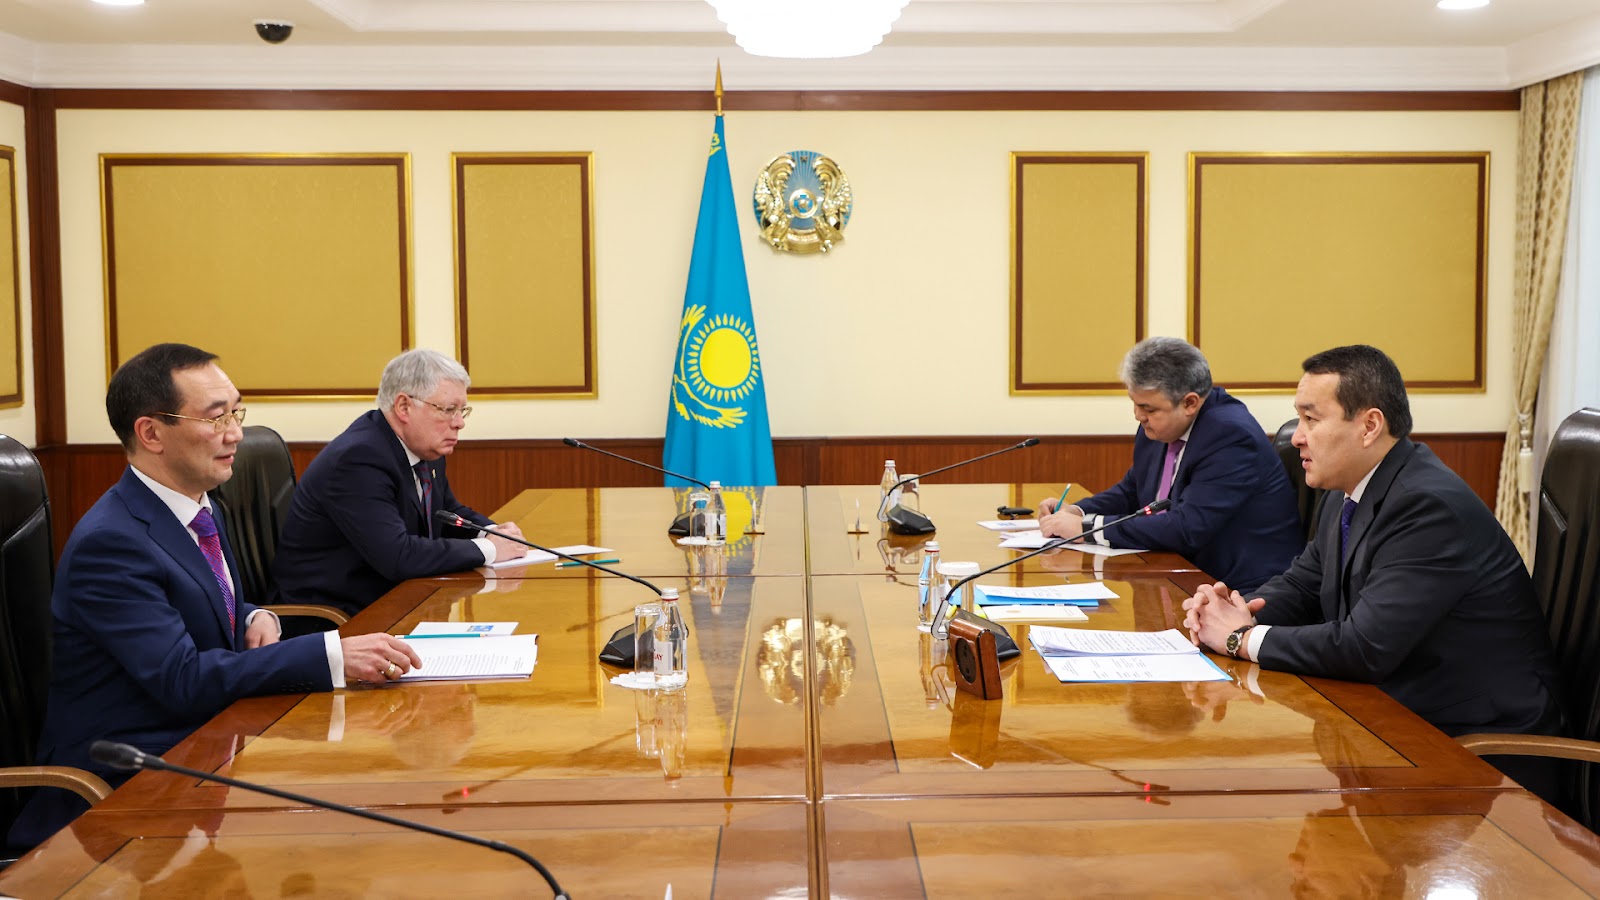 Казахстан и Республика Саха намерены создать совместный исторический проект об истоках происхождения и становления тюркских народов